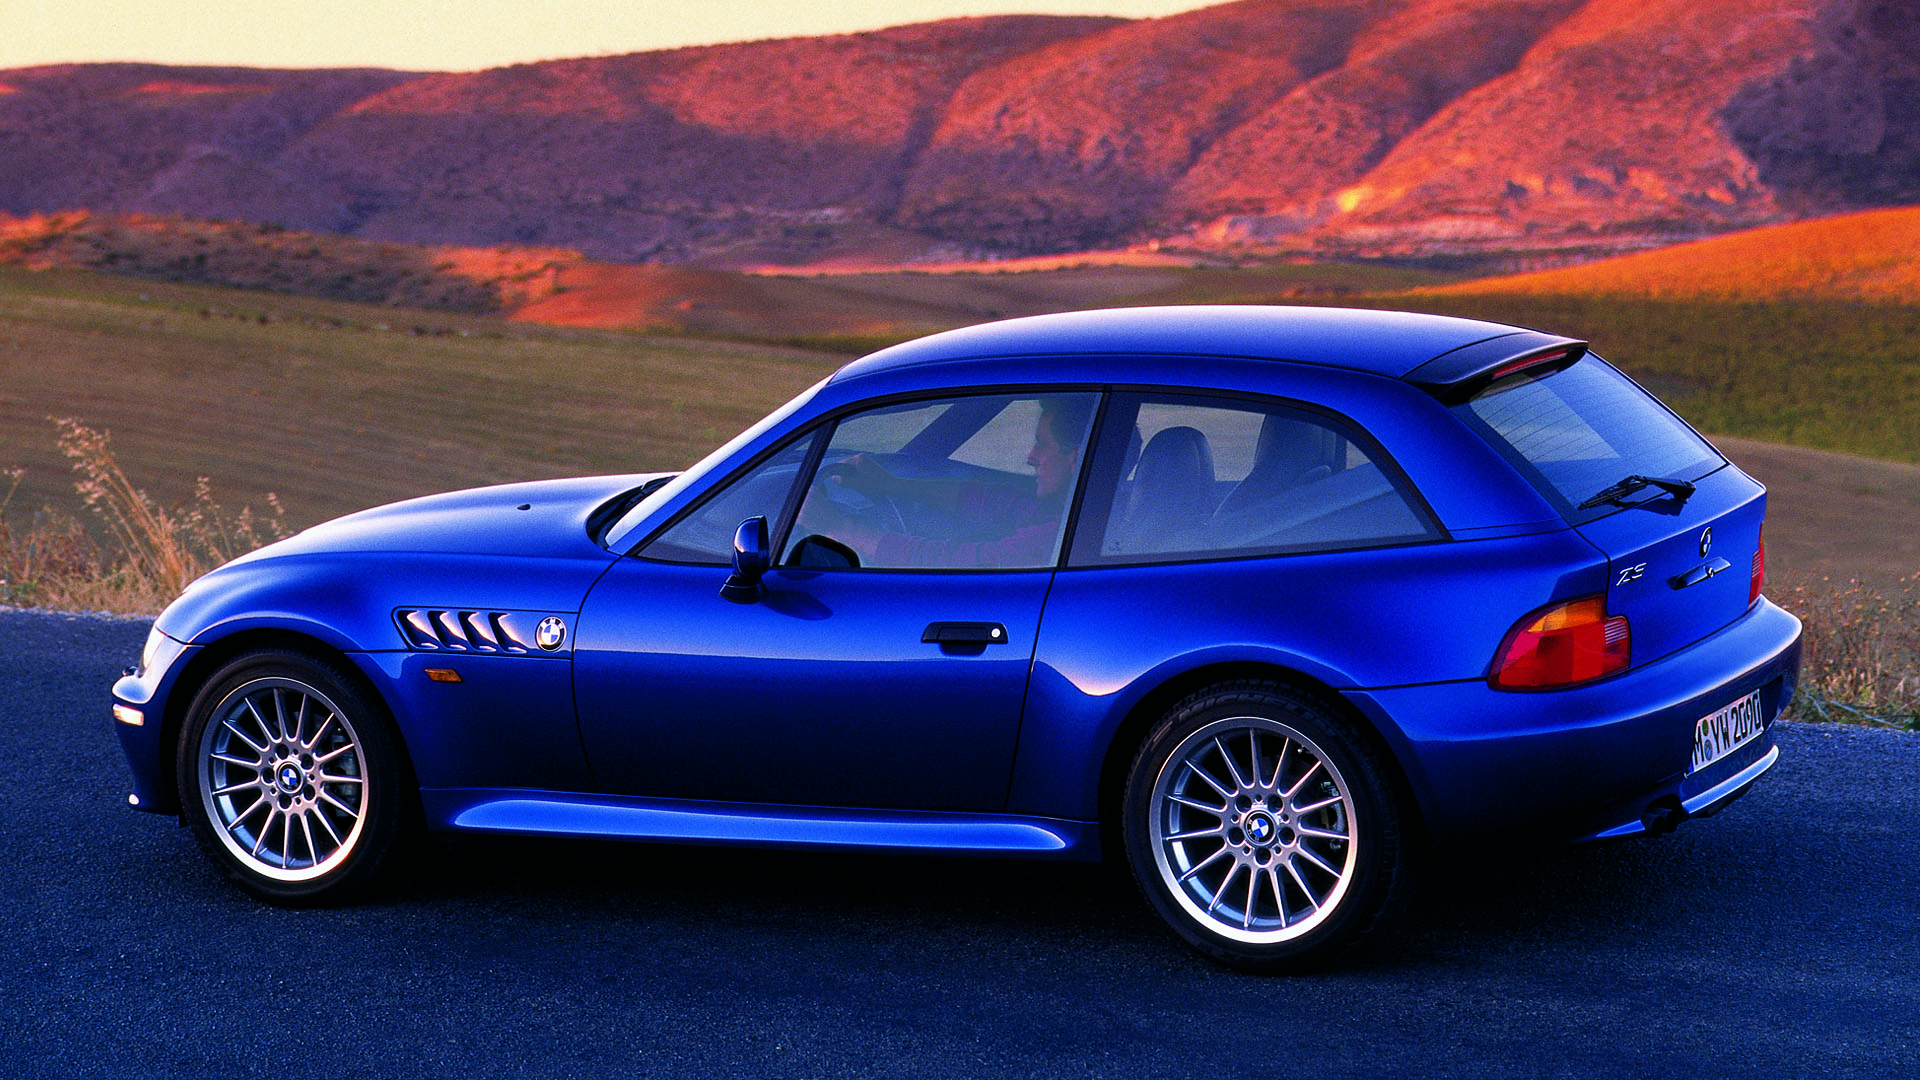 BMW Z3 Coupe Wallpaper & HD Image